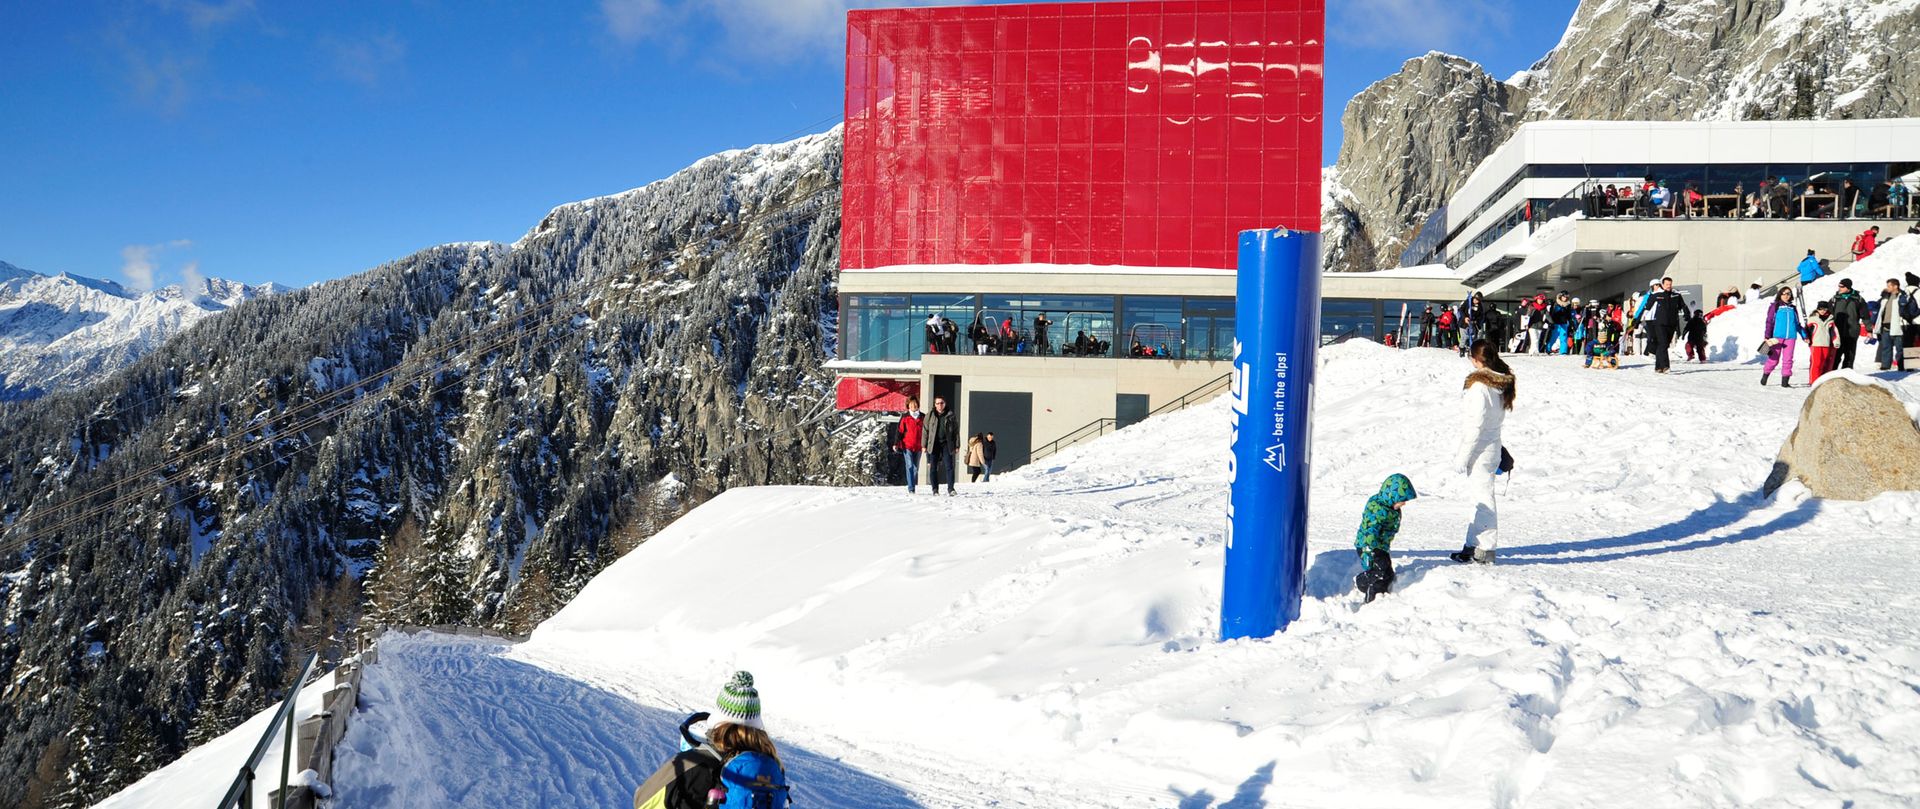 Ski area Merano 2000 toboggan run Hotel Hafling